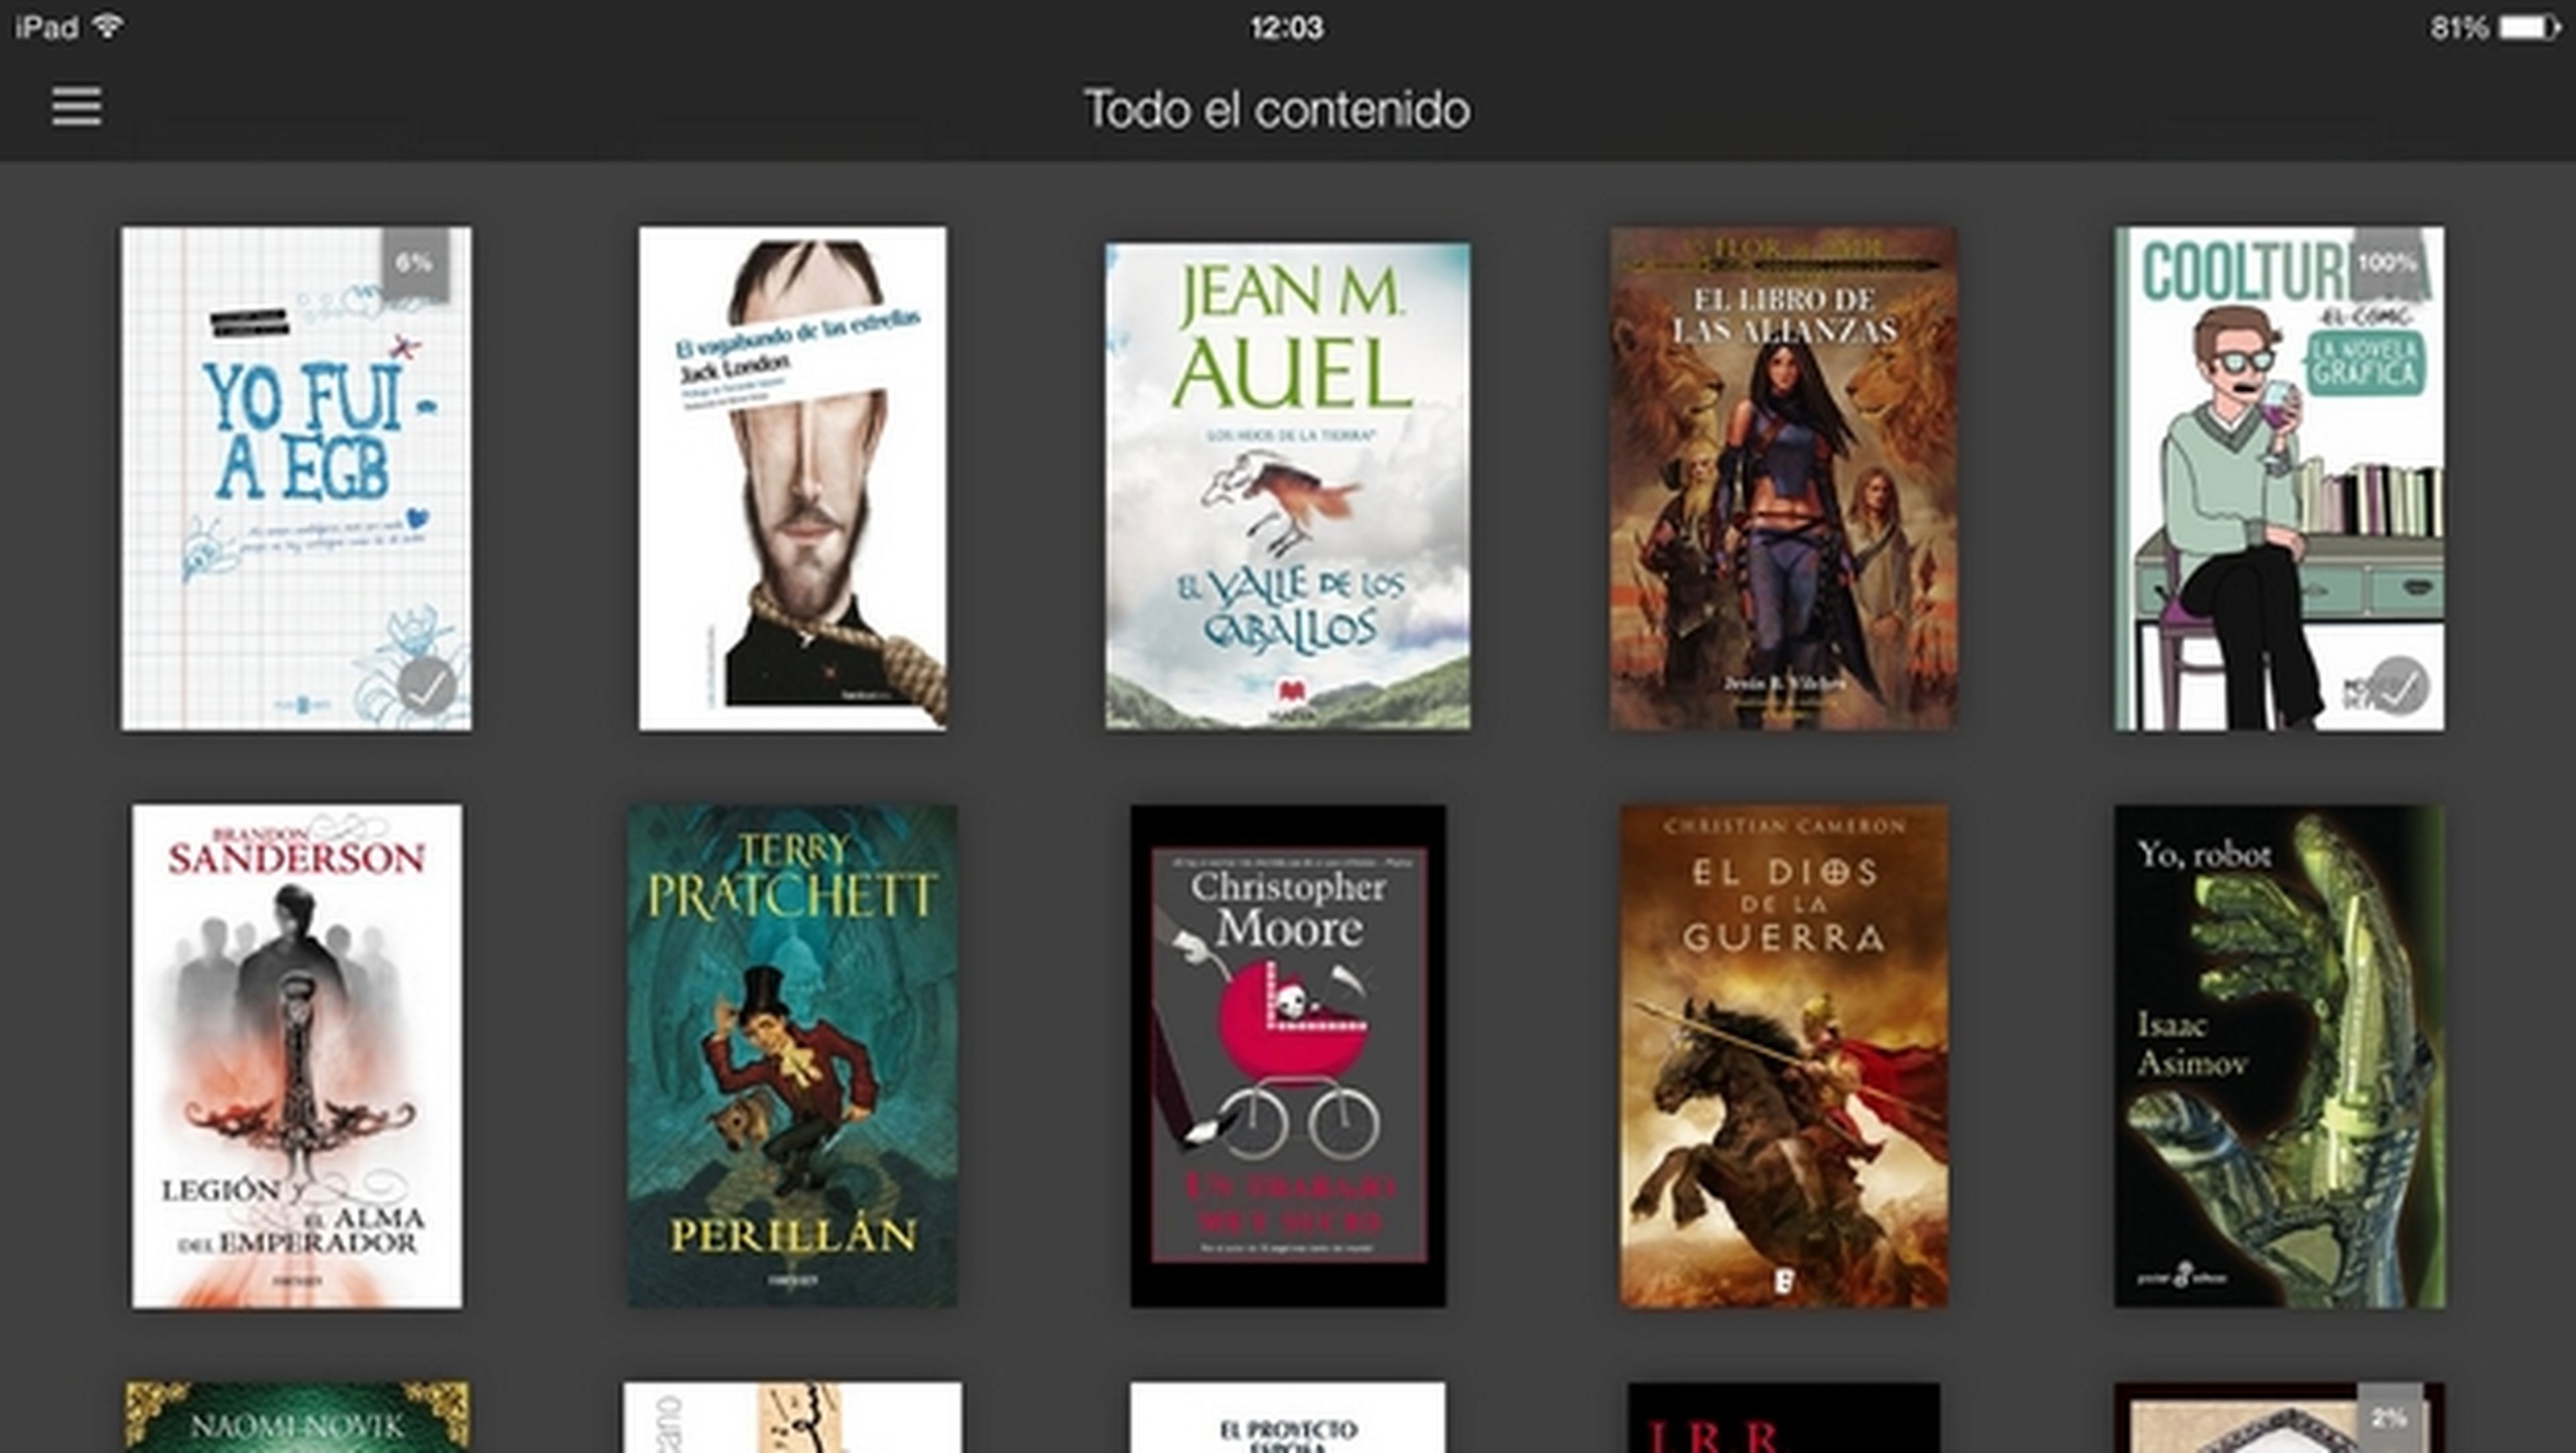 Las 10 citas favoritas de los lectores españoles de Amazon Kindle en 2013